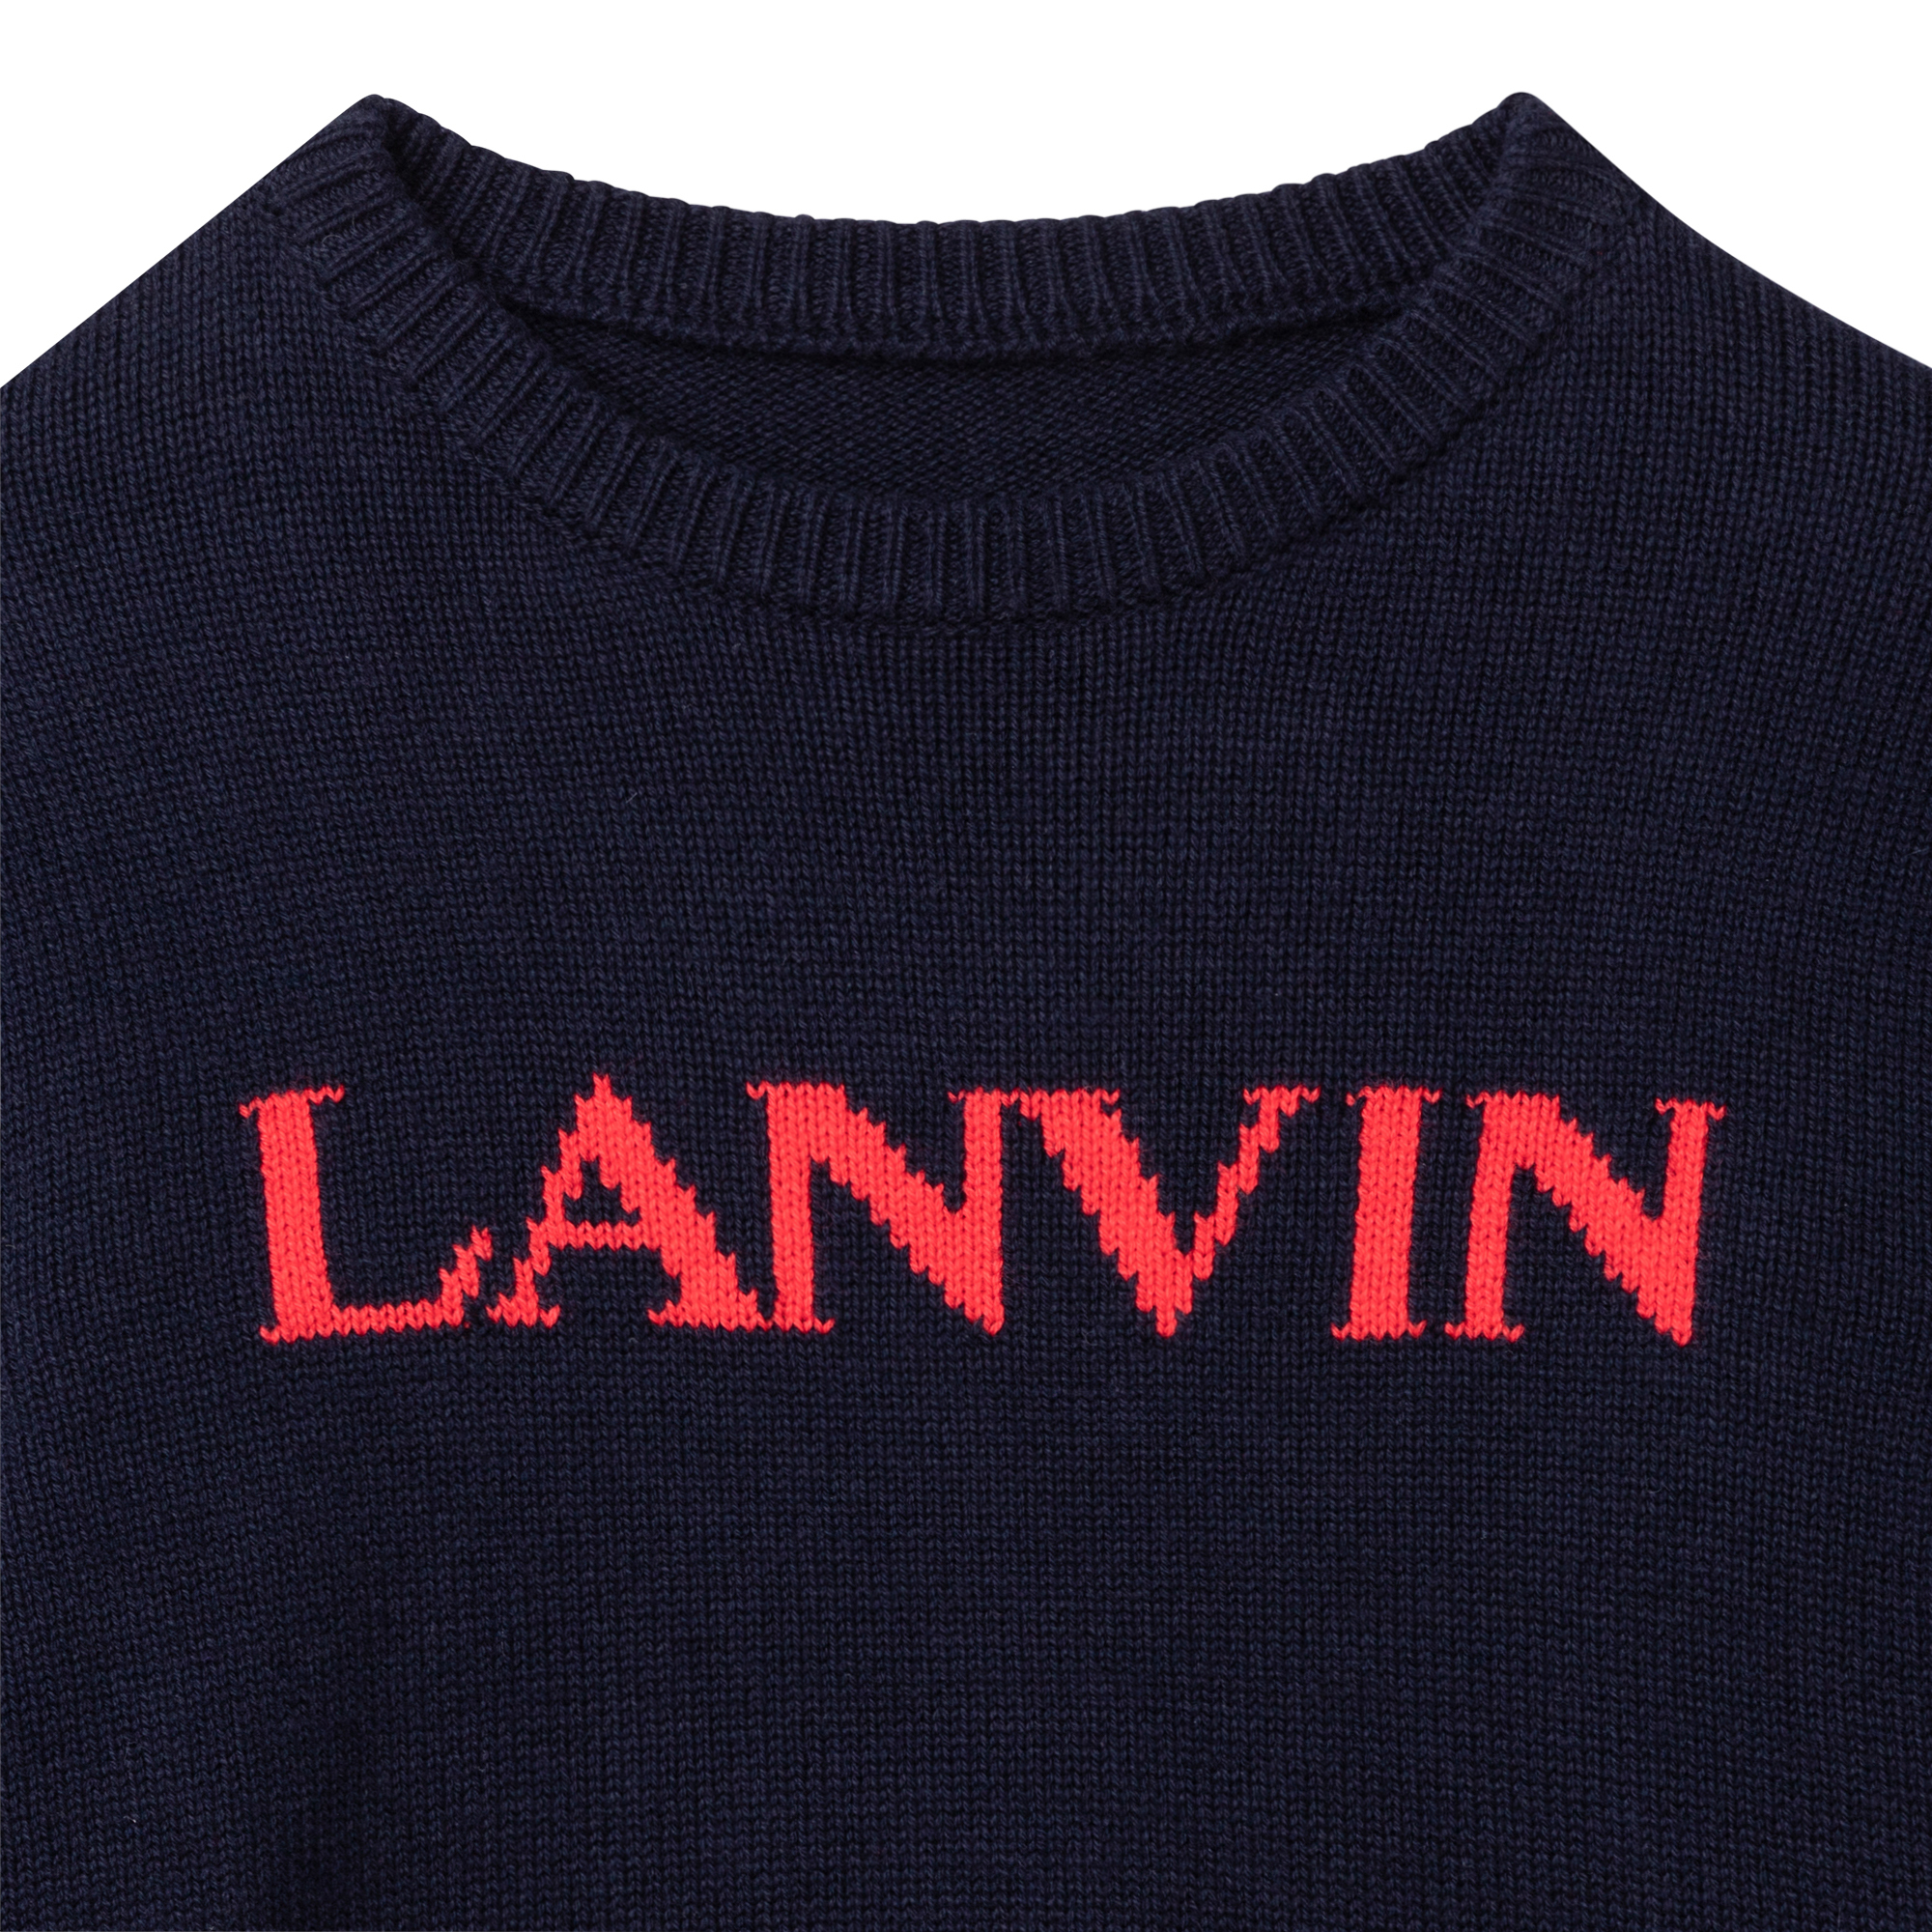 Pull en coton et laine LANVIN pour GARCON